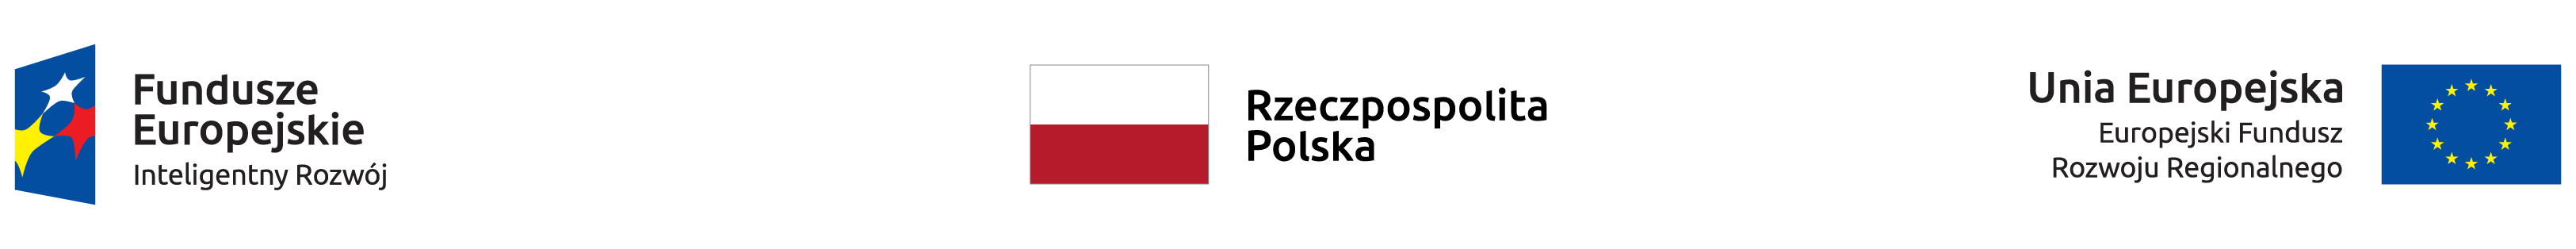 Loga: Funduszy Europejskich - Inteligentny Rozwój, Rzeczypospolitej Polskiej i Unii Europejskiej - Europejskiego Funduszu Rozwoju Regionalnego